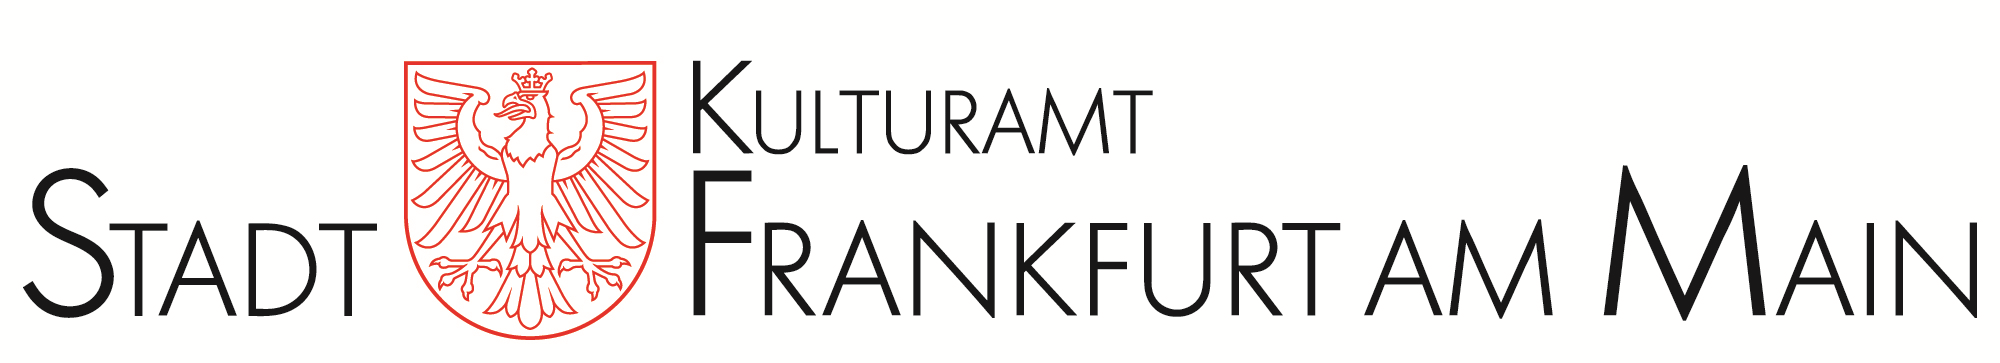 Kulturamt Frankfurt am Main Logo und Wortmarke